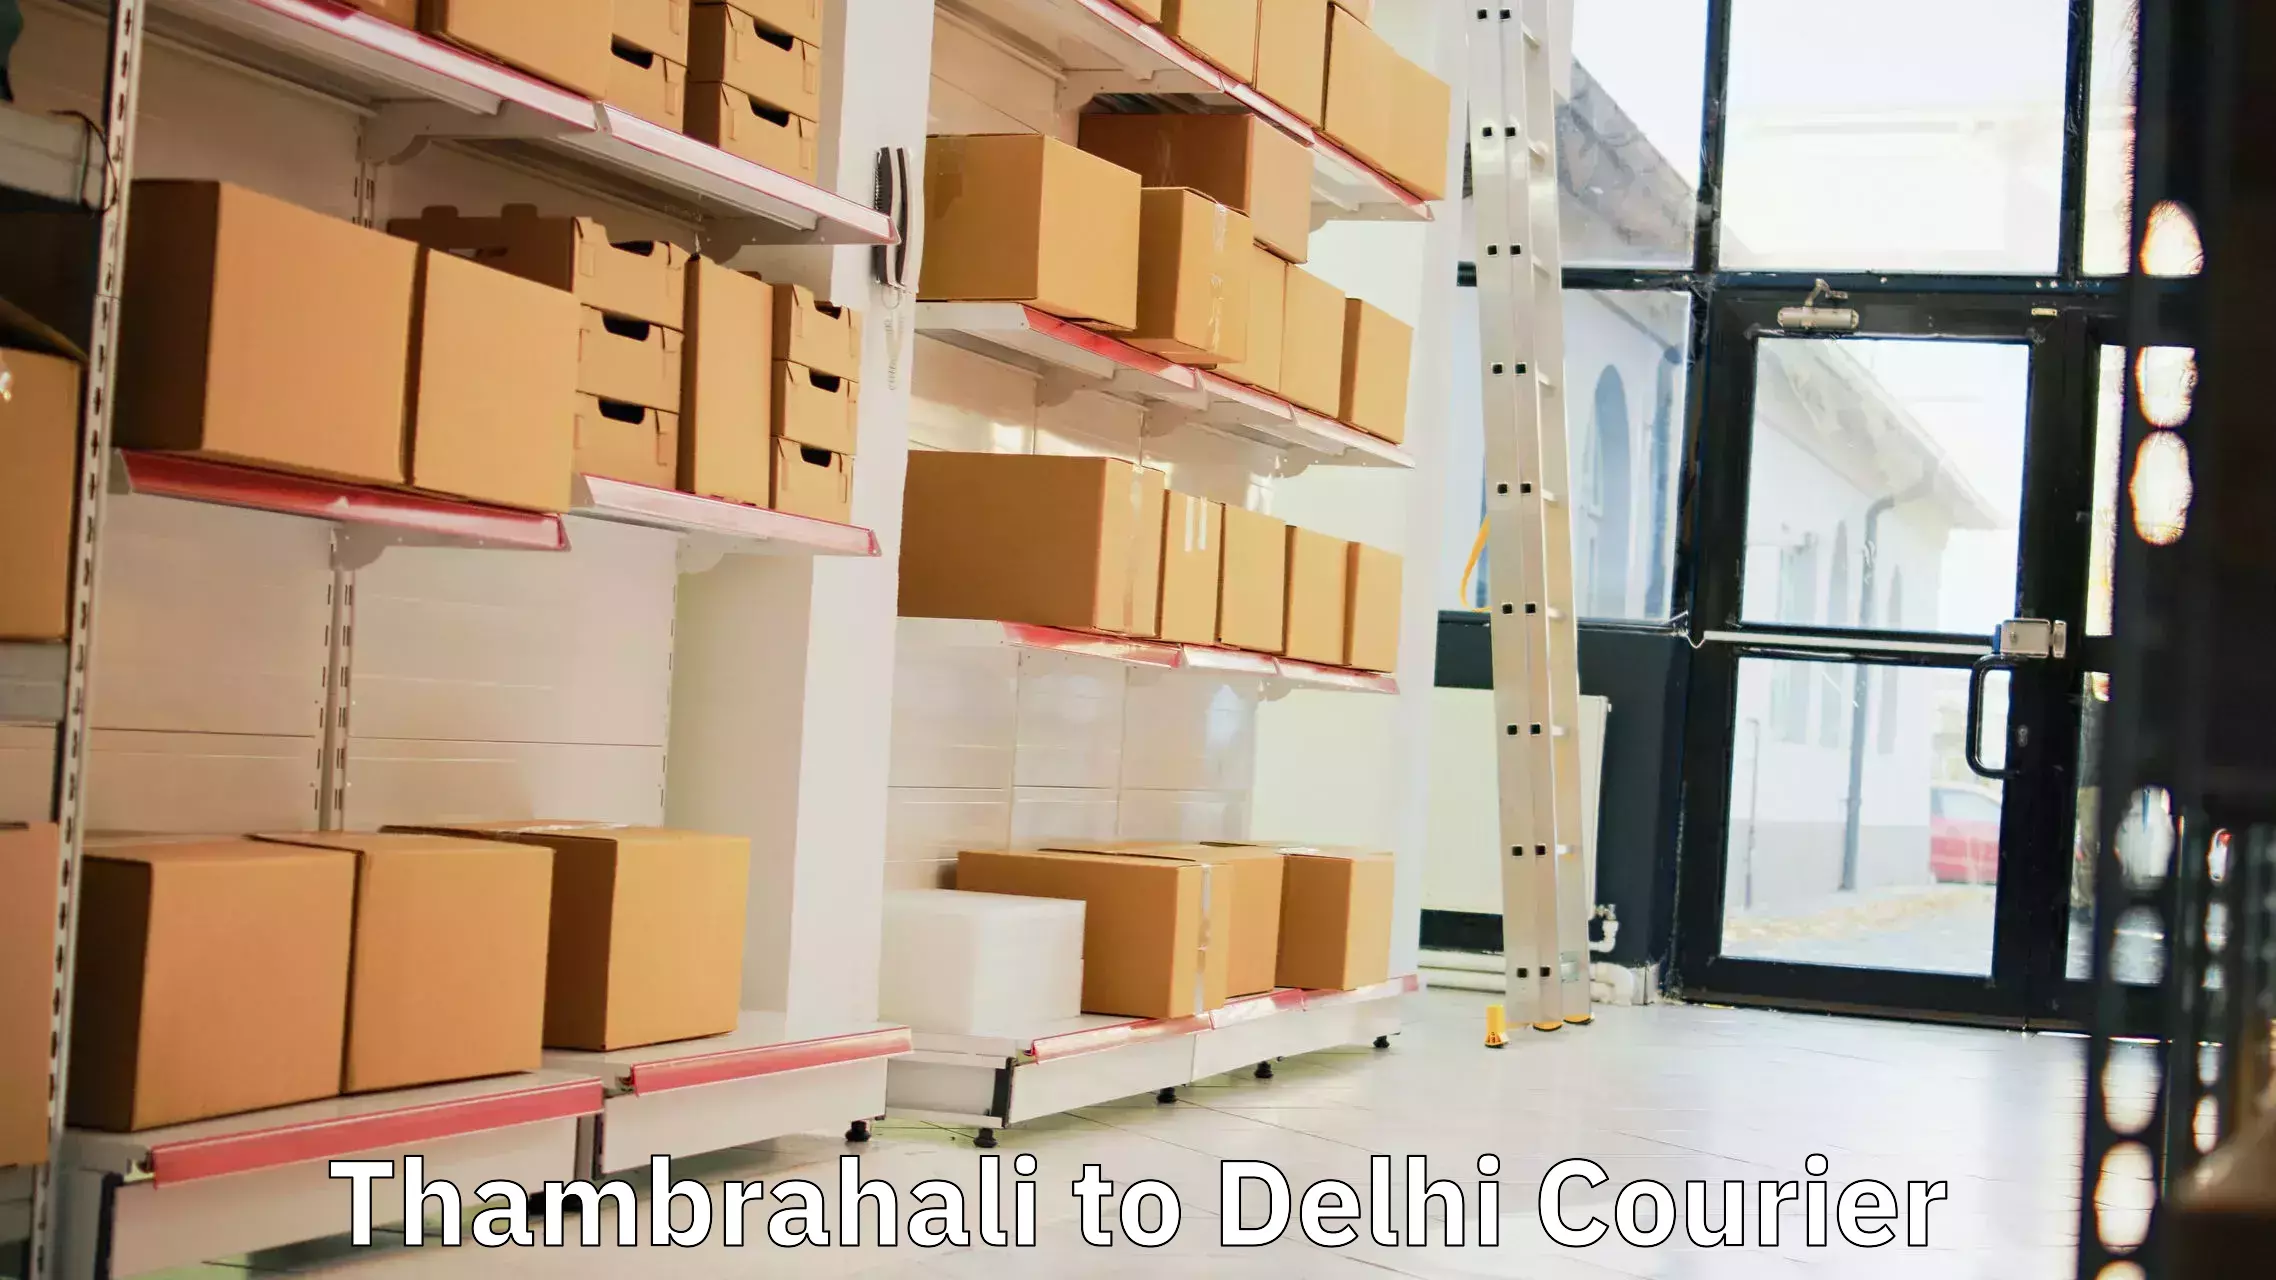 Local delivery service Thambrahali to Delhi